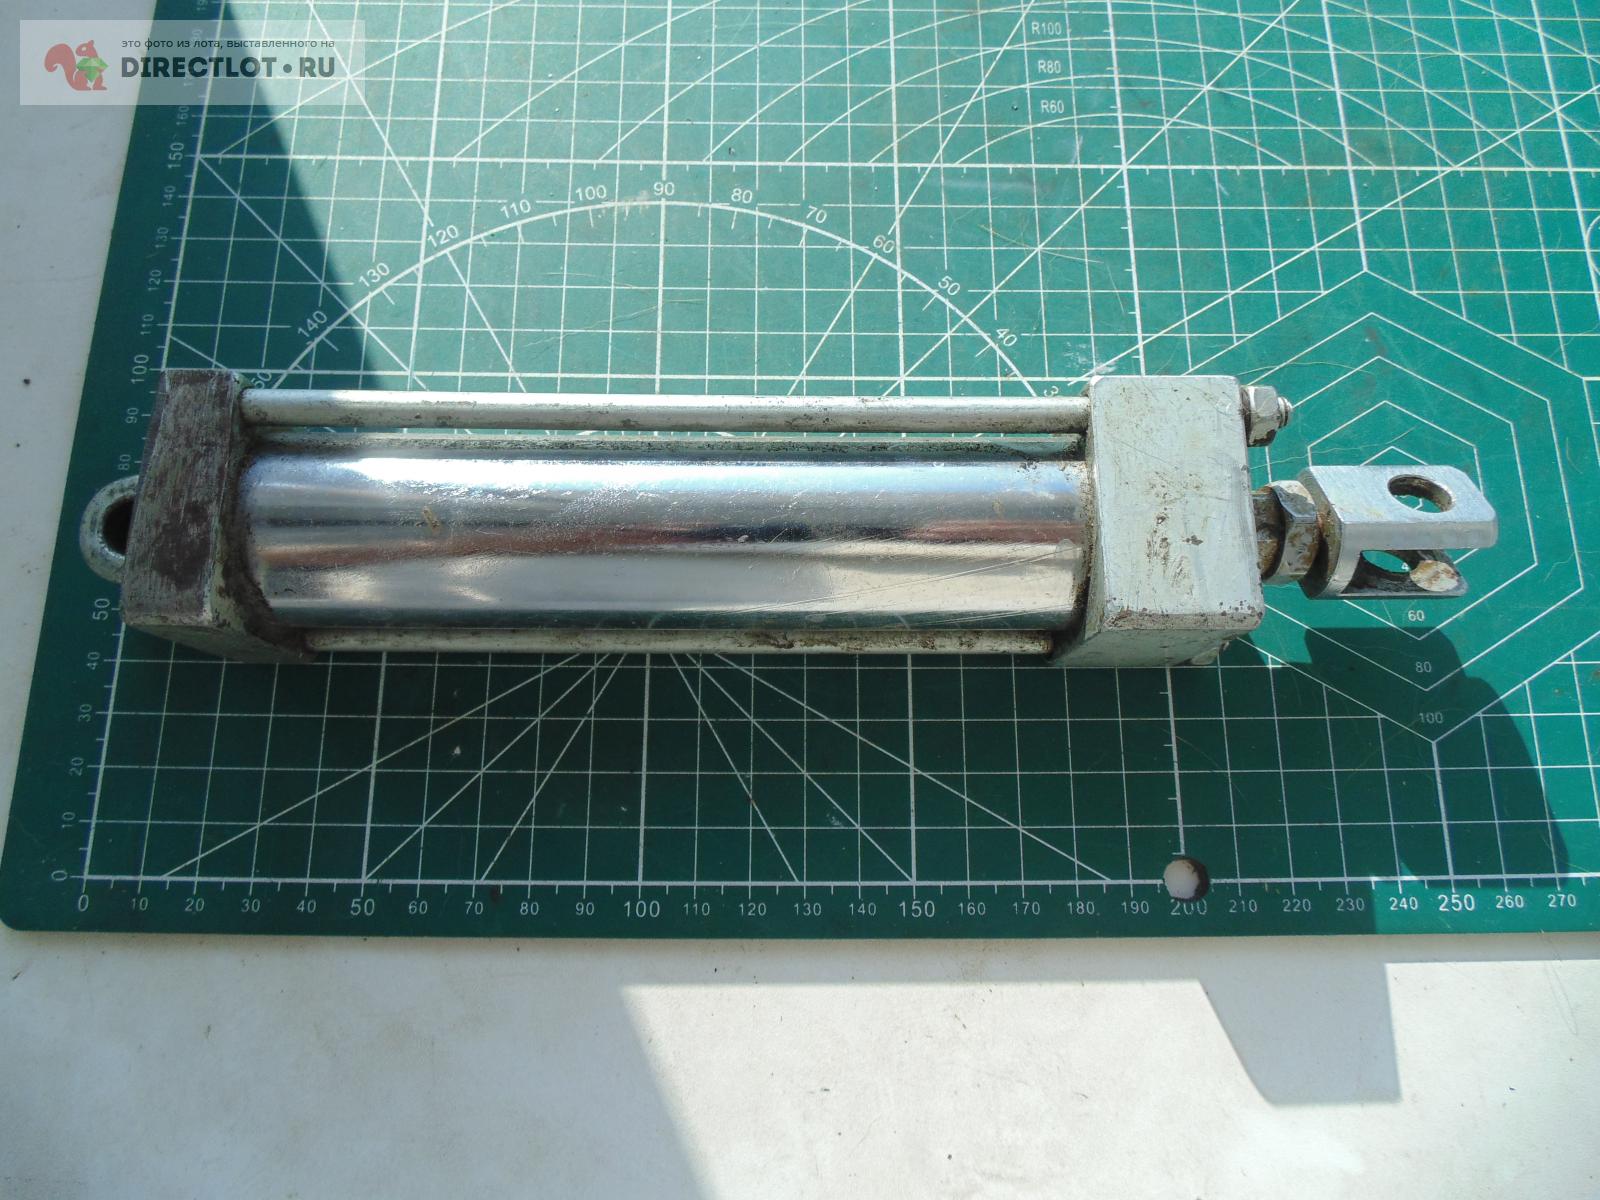 Обслуживаемый гидроцилиндр из нержавеющей стали. Ход 100-110 мм, Ф .